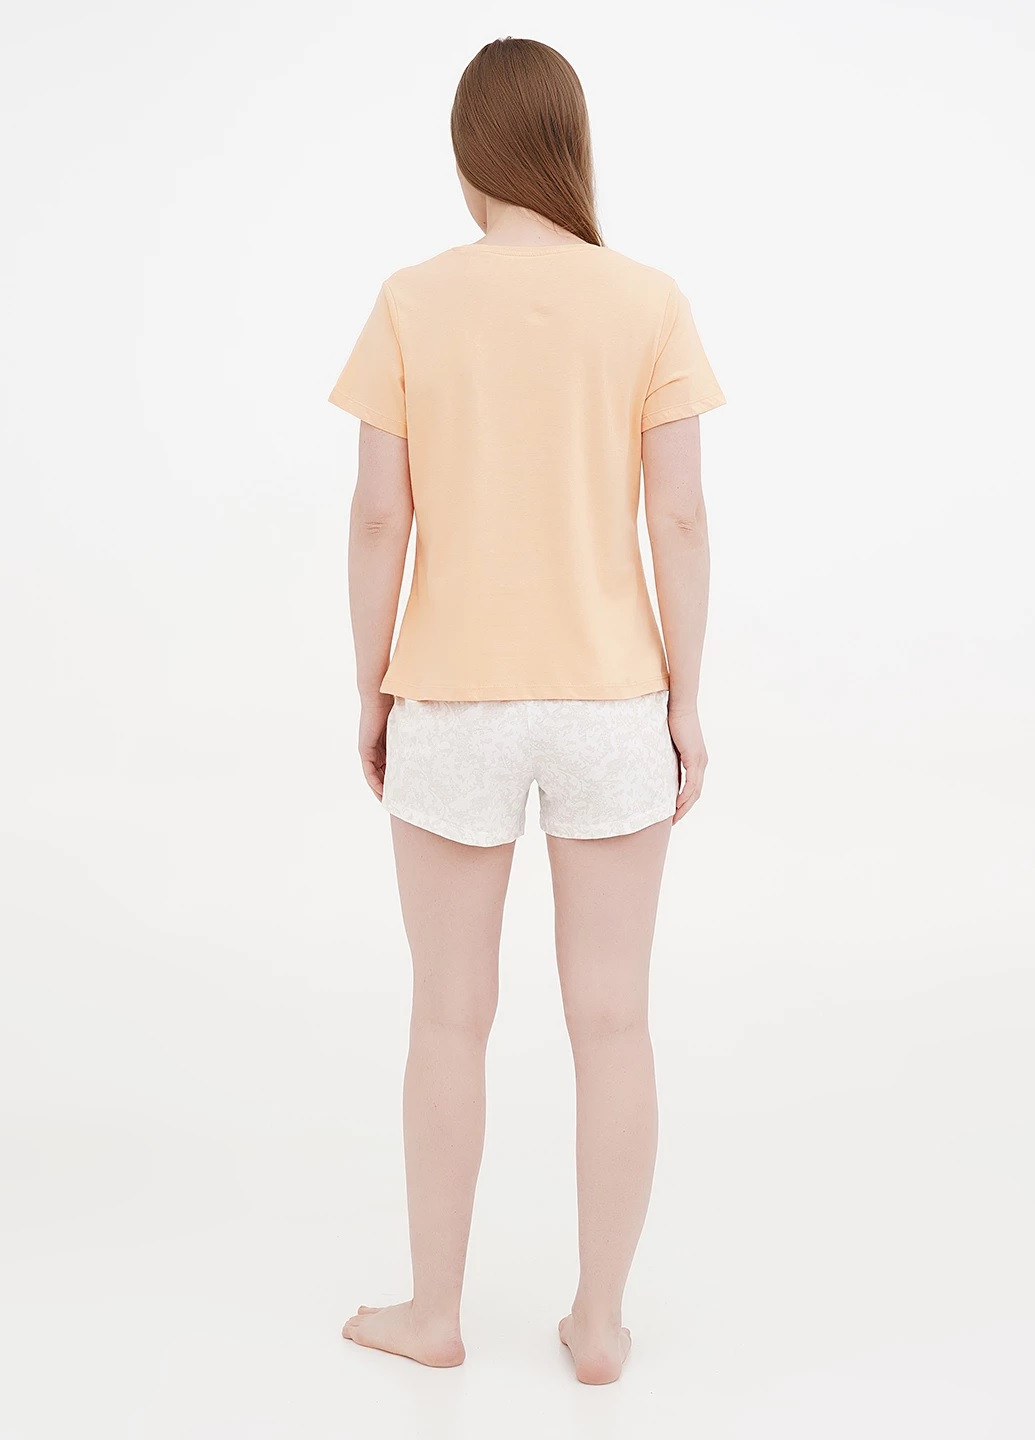 Комбинированная всесезон пижама (футболка, шорты ) футболка + шорты oyanda